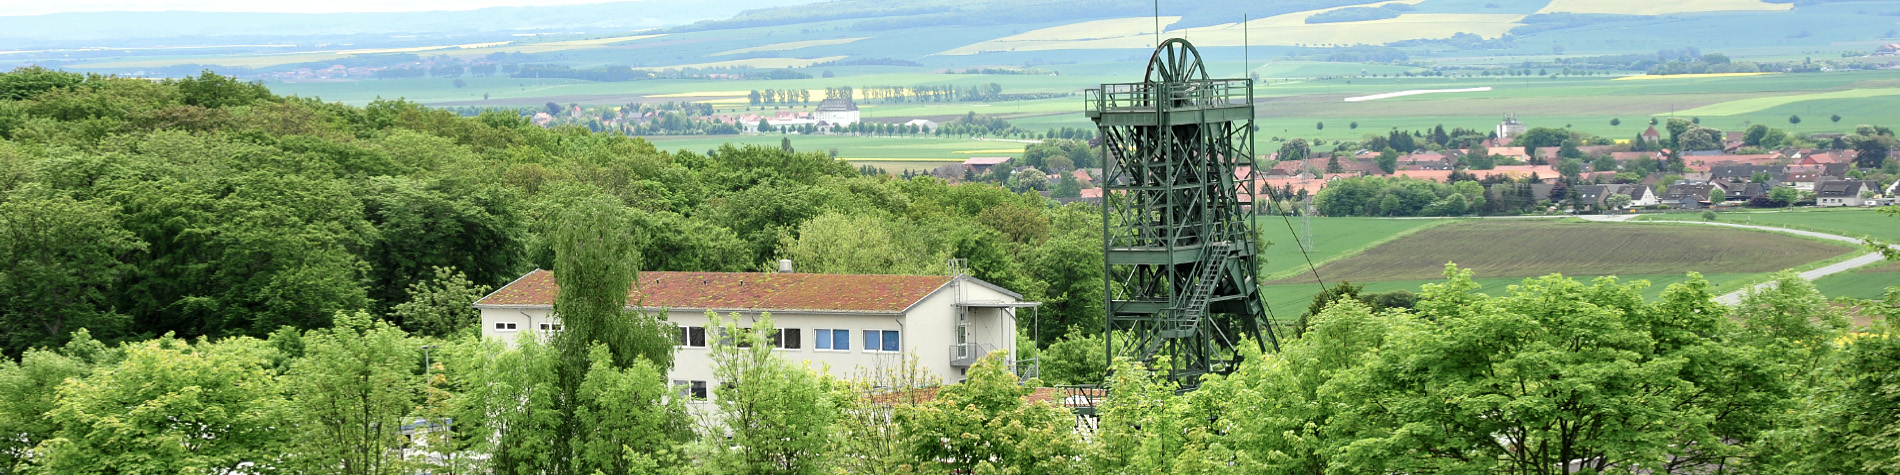 The Asse II mine near Remlingen.